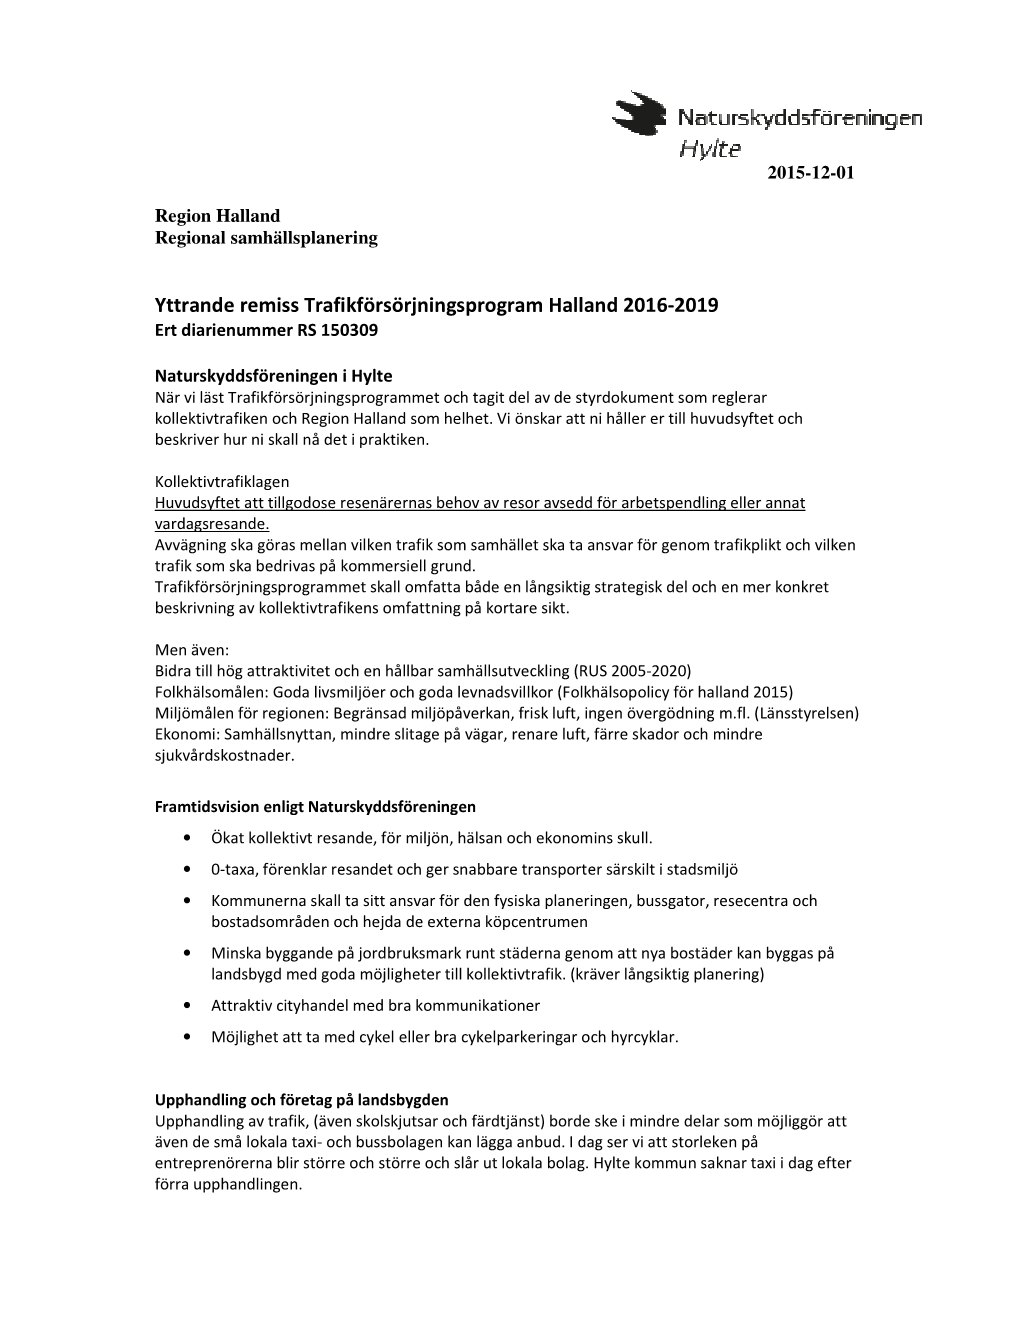 Yttrande Remiss Trafikförsörjningsprogram Halland 2016-2019 Ert Diarienummer RS 150309